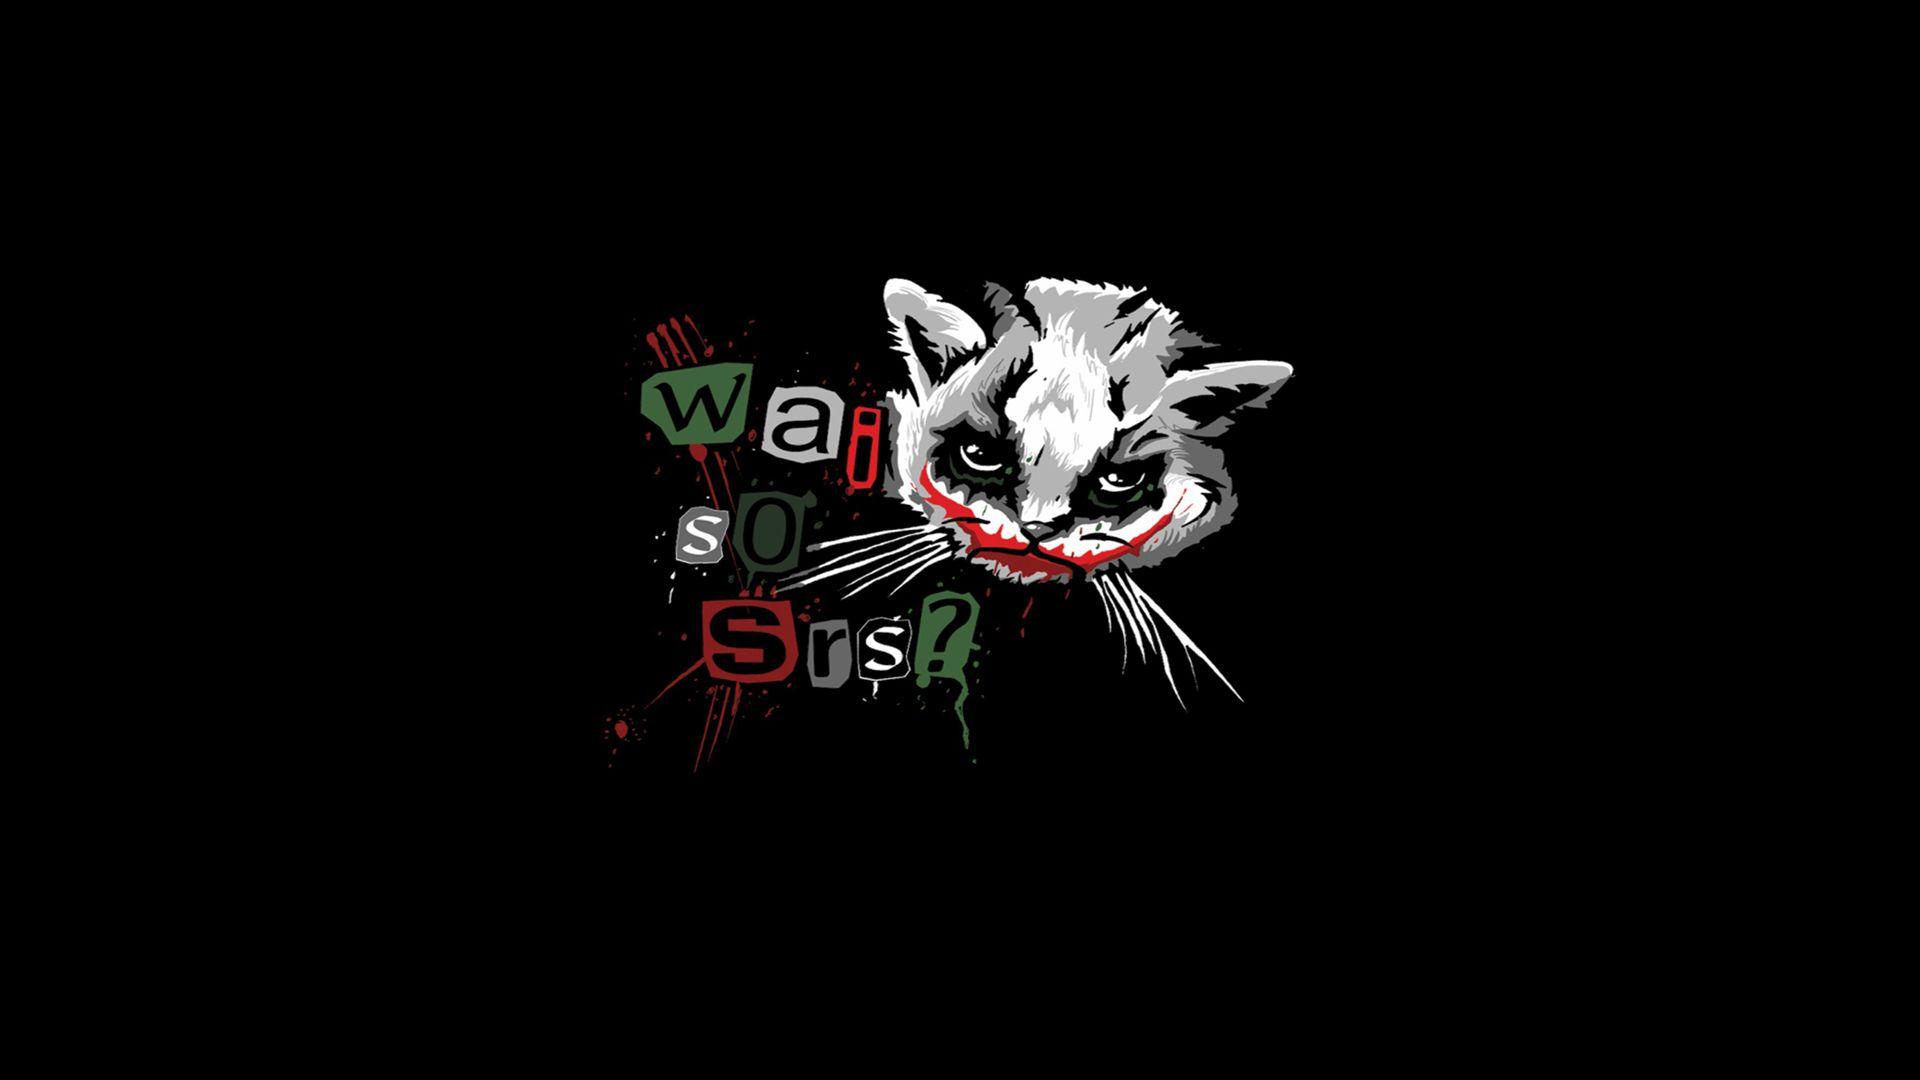 The Joker, kittens, Why So Serious? Wallpaper / WallpaperJam.com